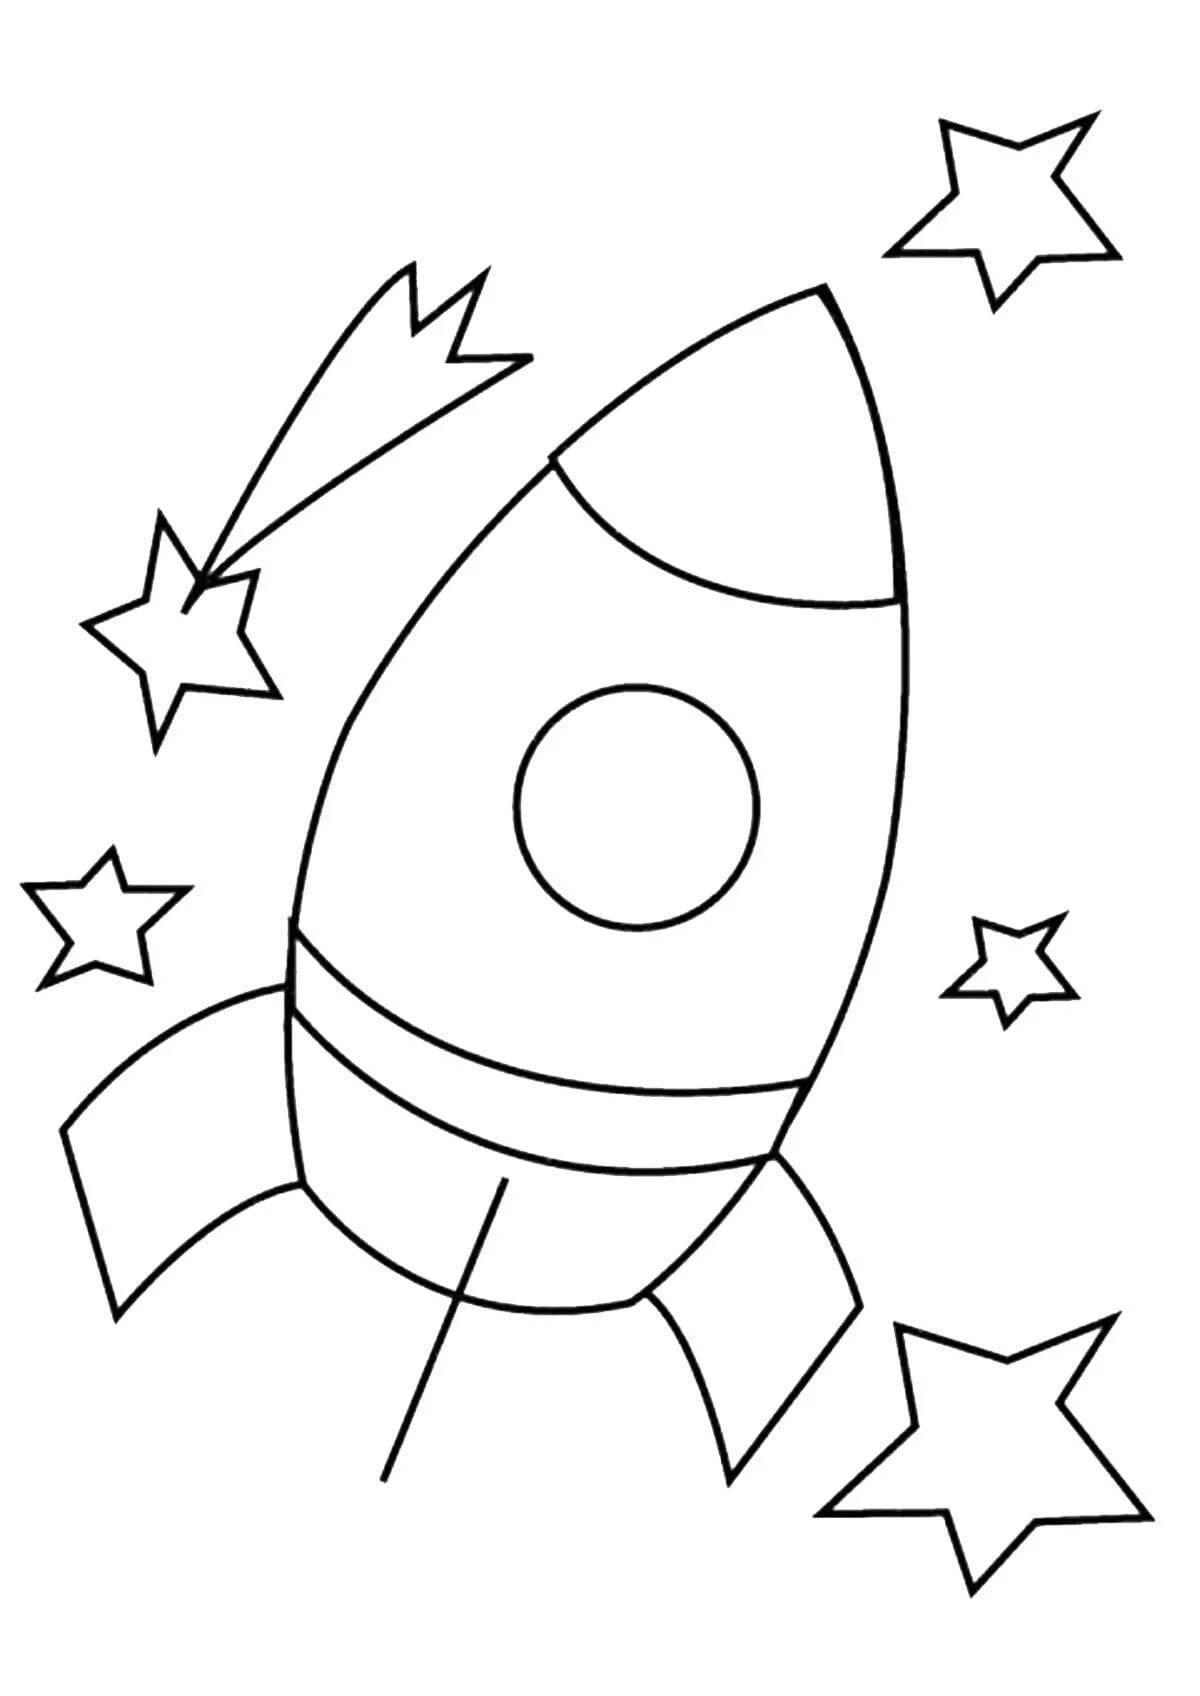 Раскраска космос для детей 3 лет. Ракета раскраска. Космос раскраска для детей. Ракета закраска. Раскраски для детей космас.